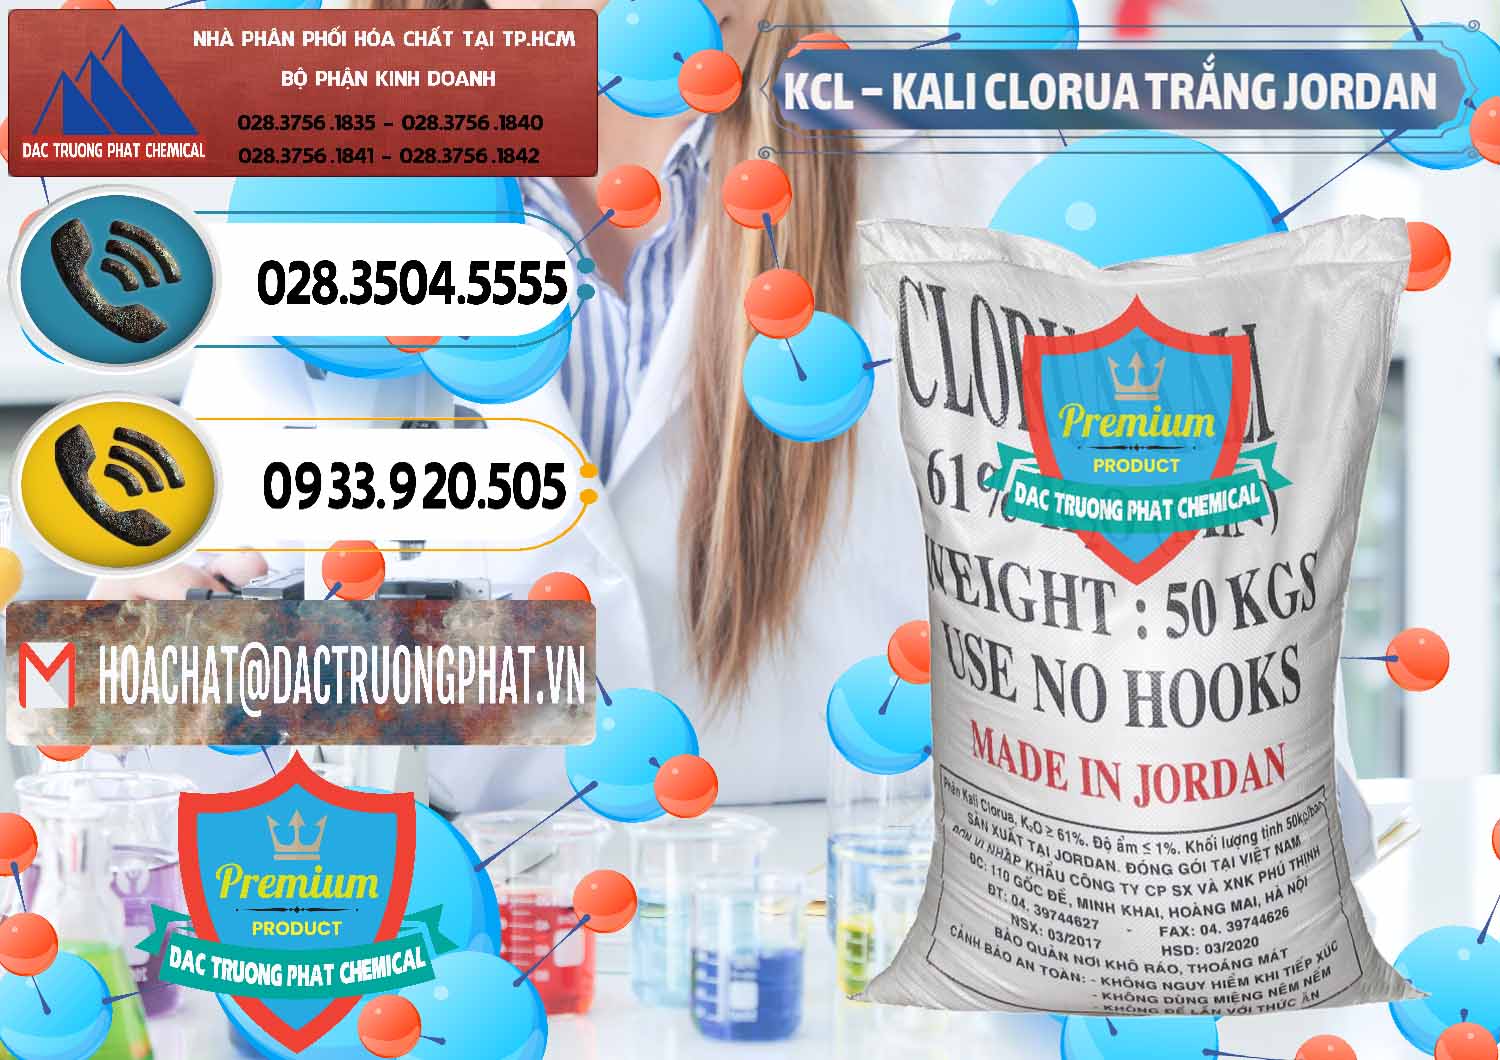 Nơi chuyên cung cấp và bán KCL – Kali Clorua Trắng Jordan - 0088 - Cung cấp và phân phối hóa chất tại TP.HCM - hoachatdetnhuom.vn